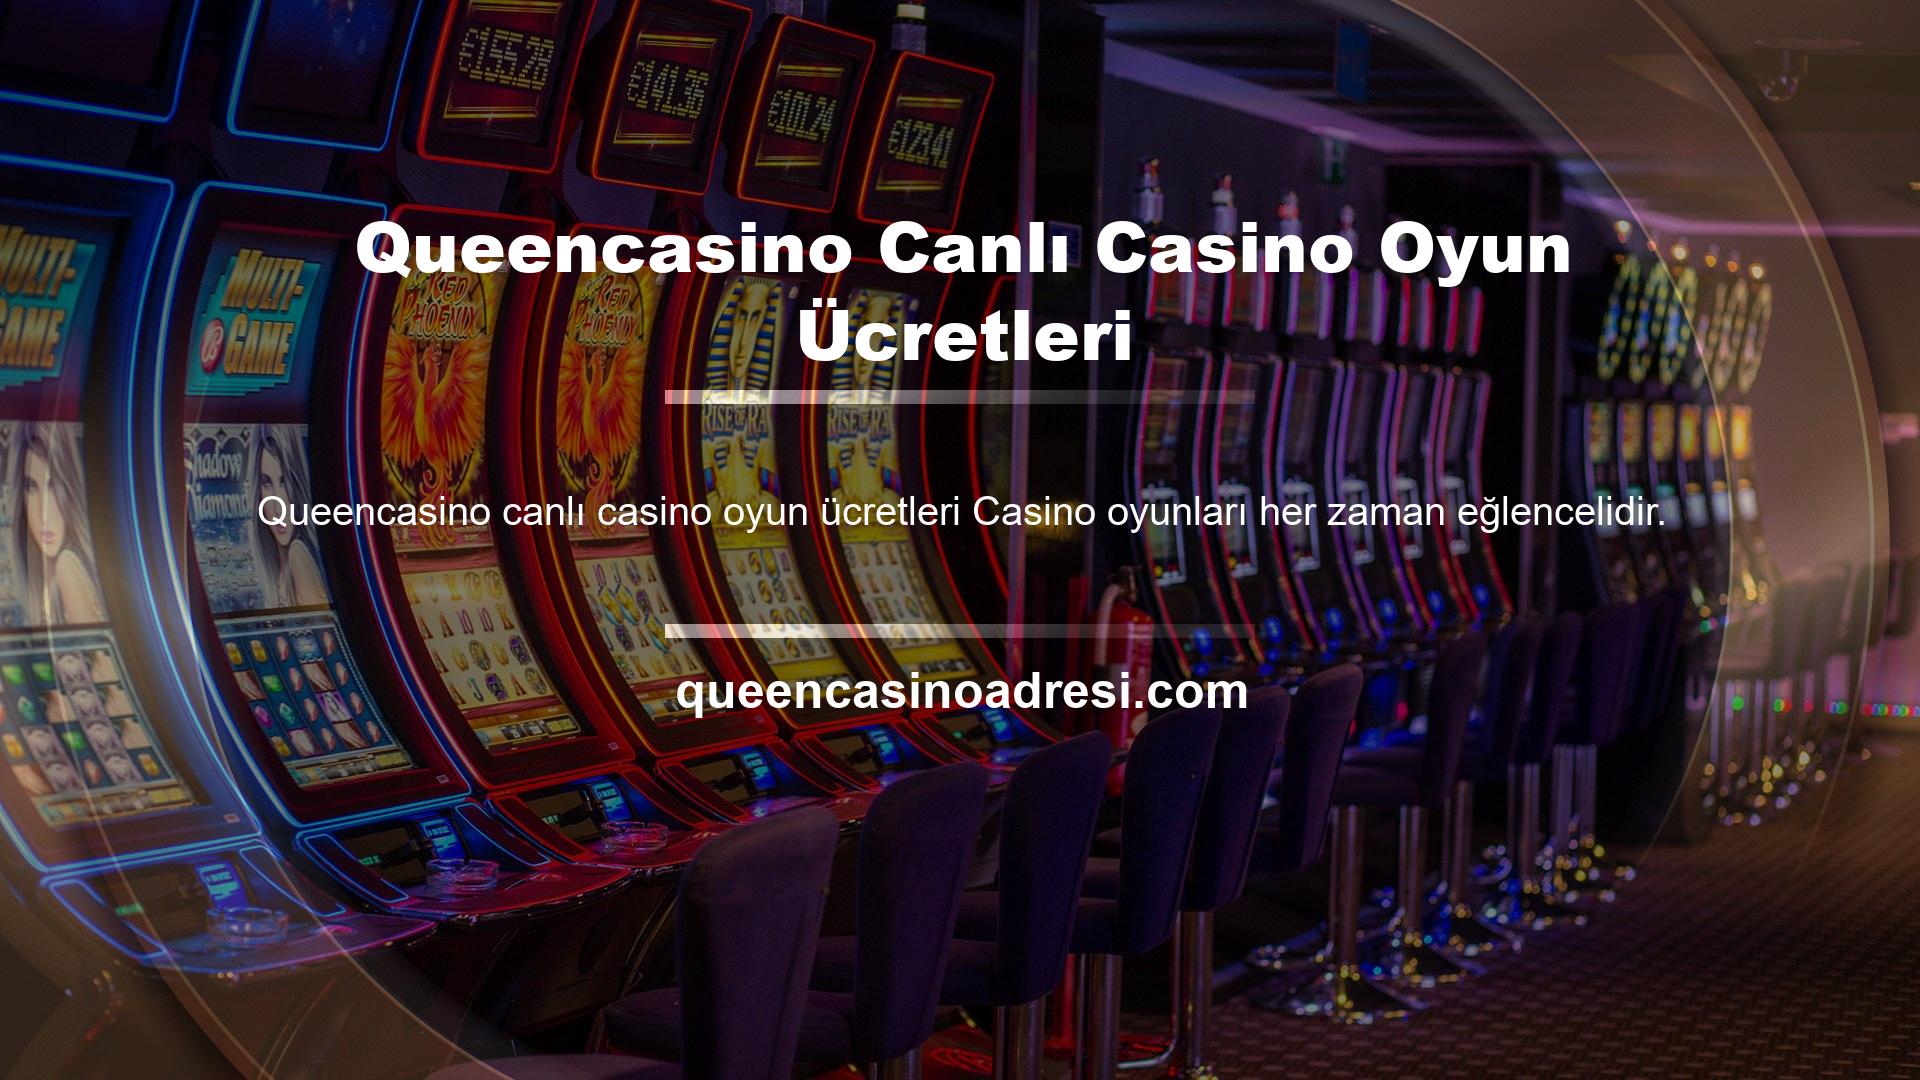 Queencasino Canlı Casino Oyun Ücretleri